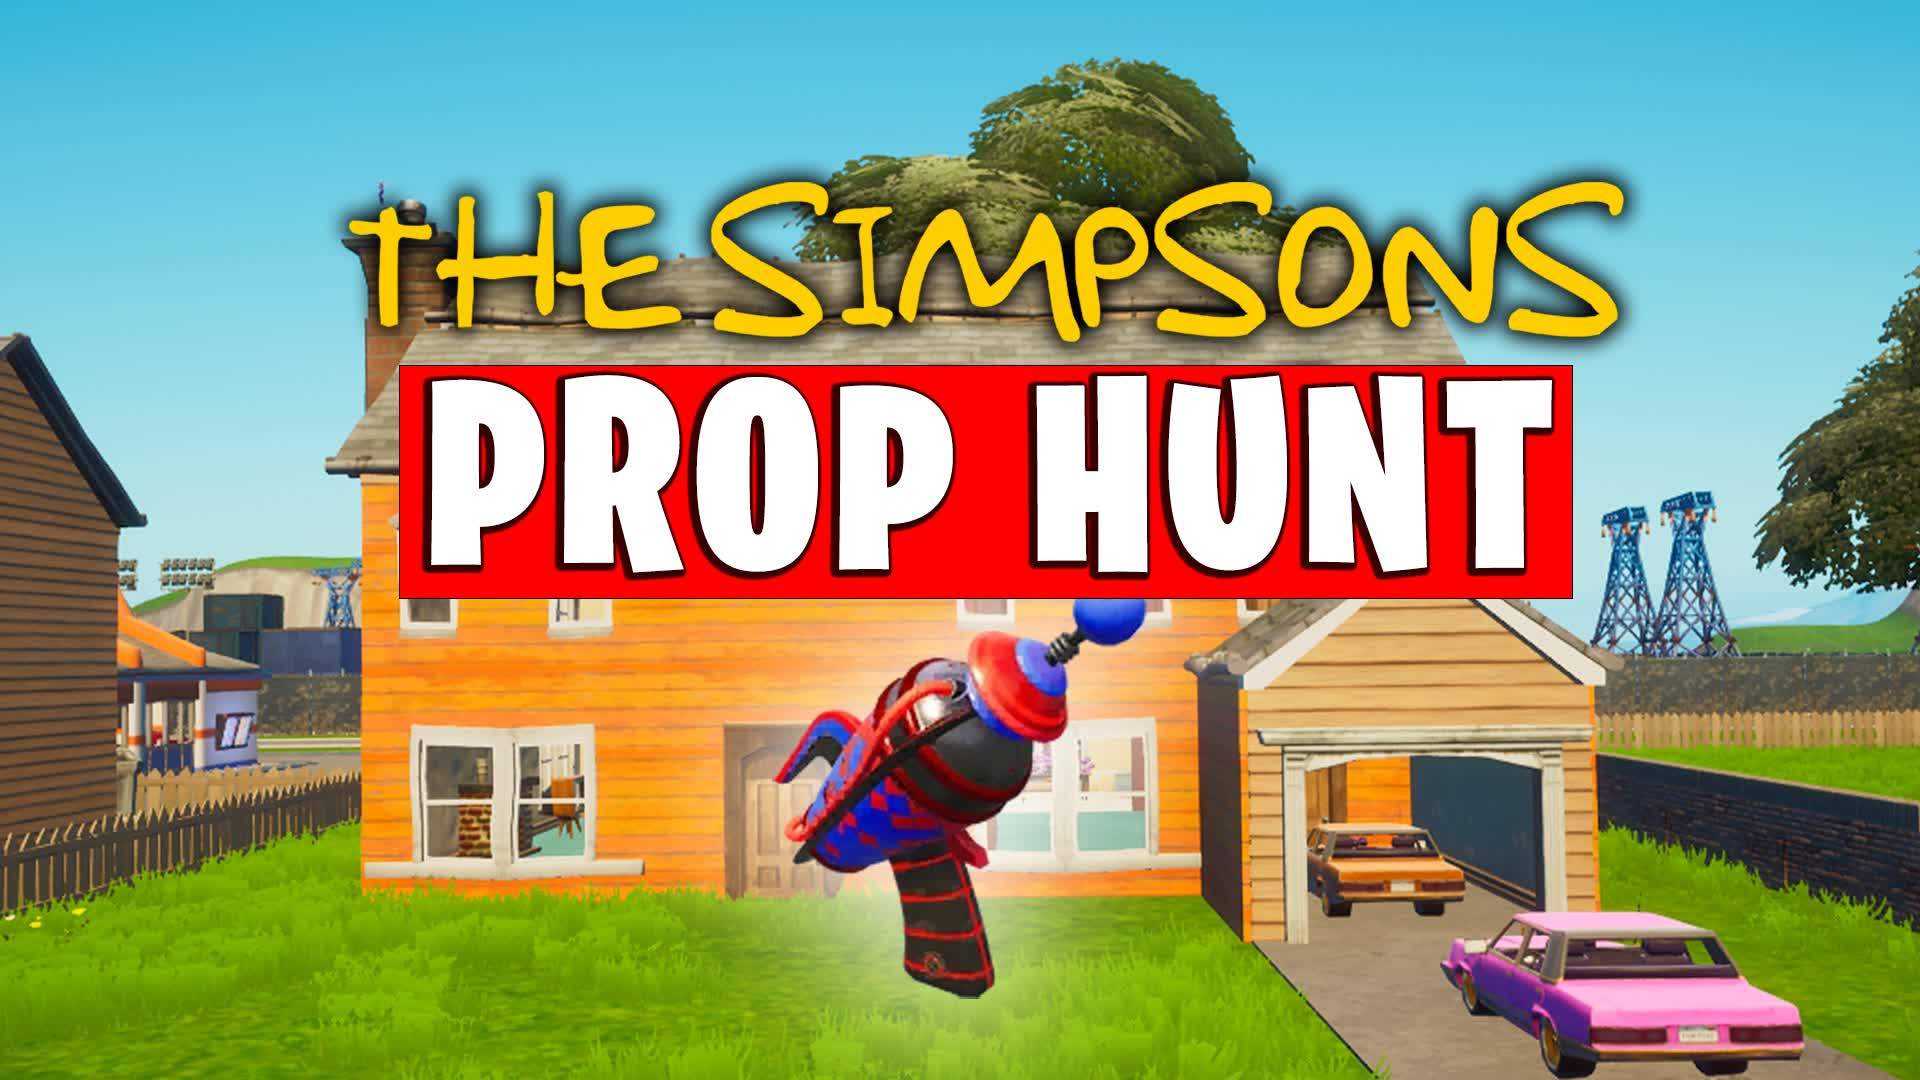 The Simpsons Prop Hunt